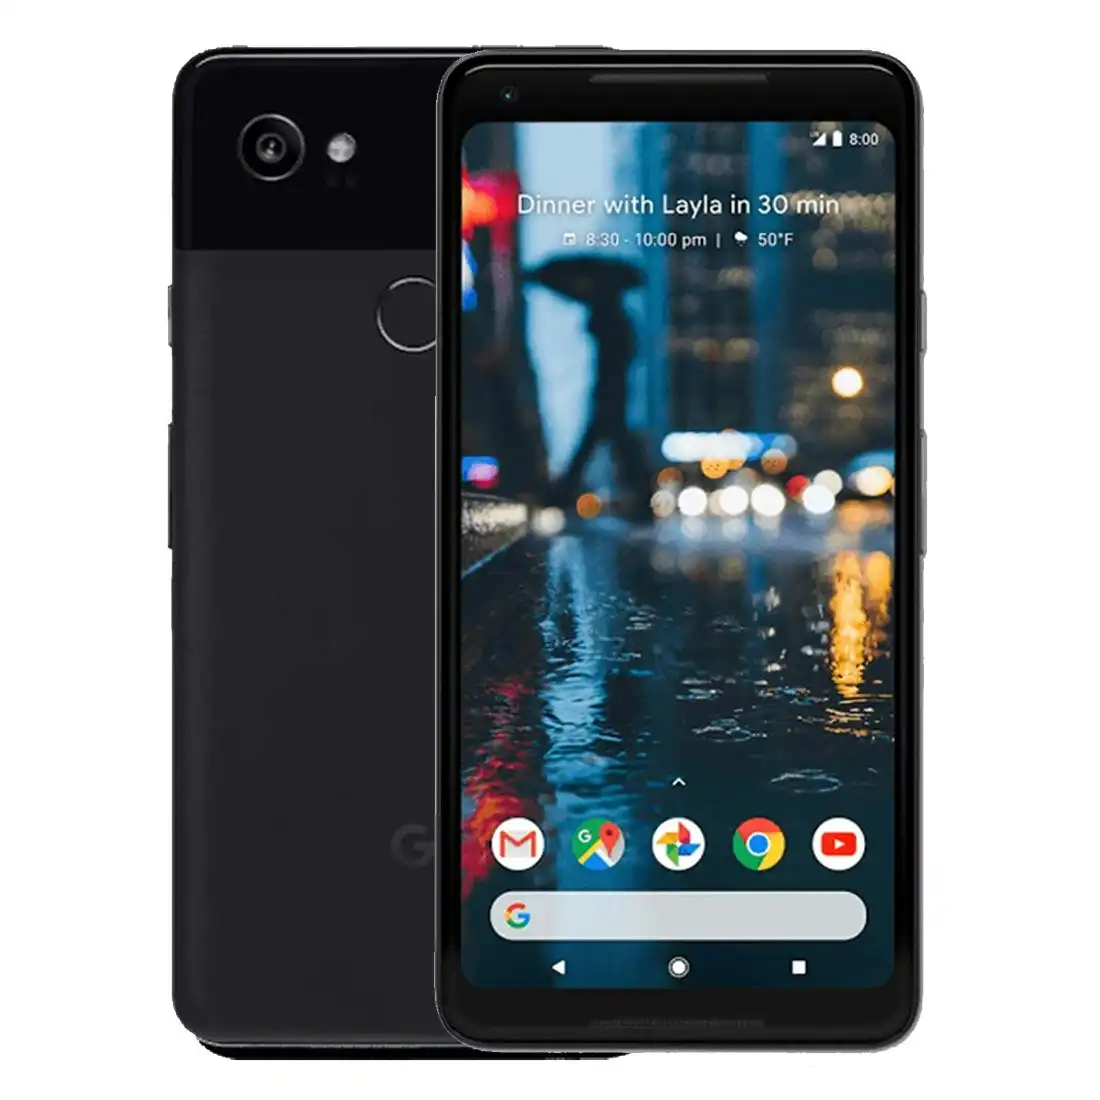 Google Pixel 2 XL (6.0", 64GB/4GB, 12.2MP) - Just Black [CPO] - As New